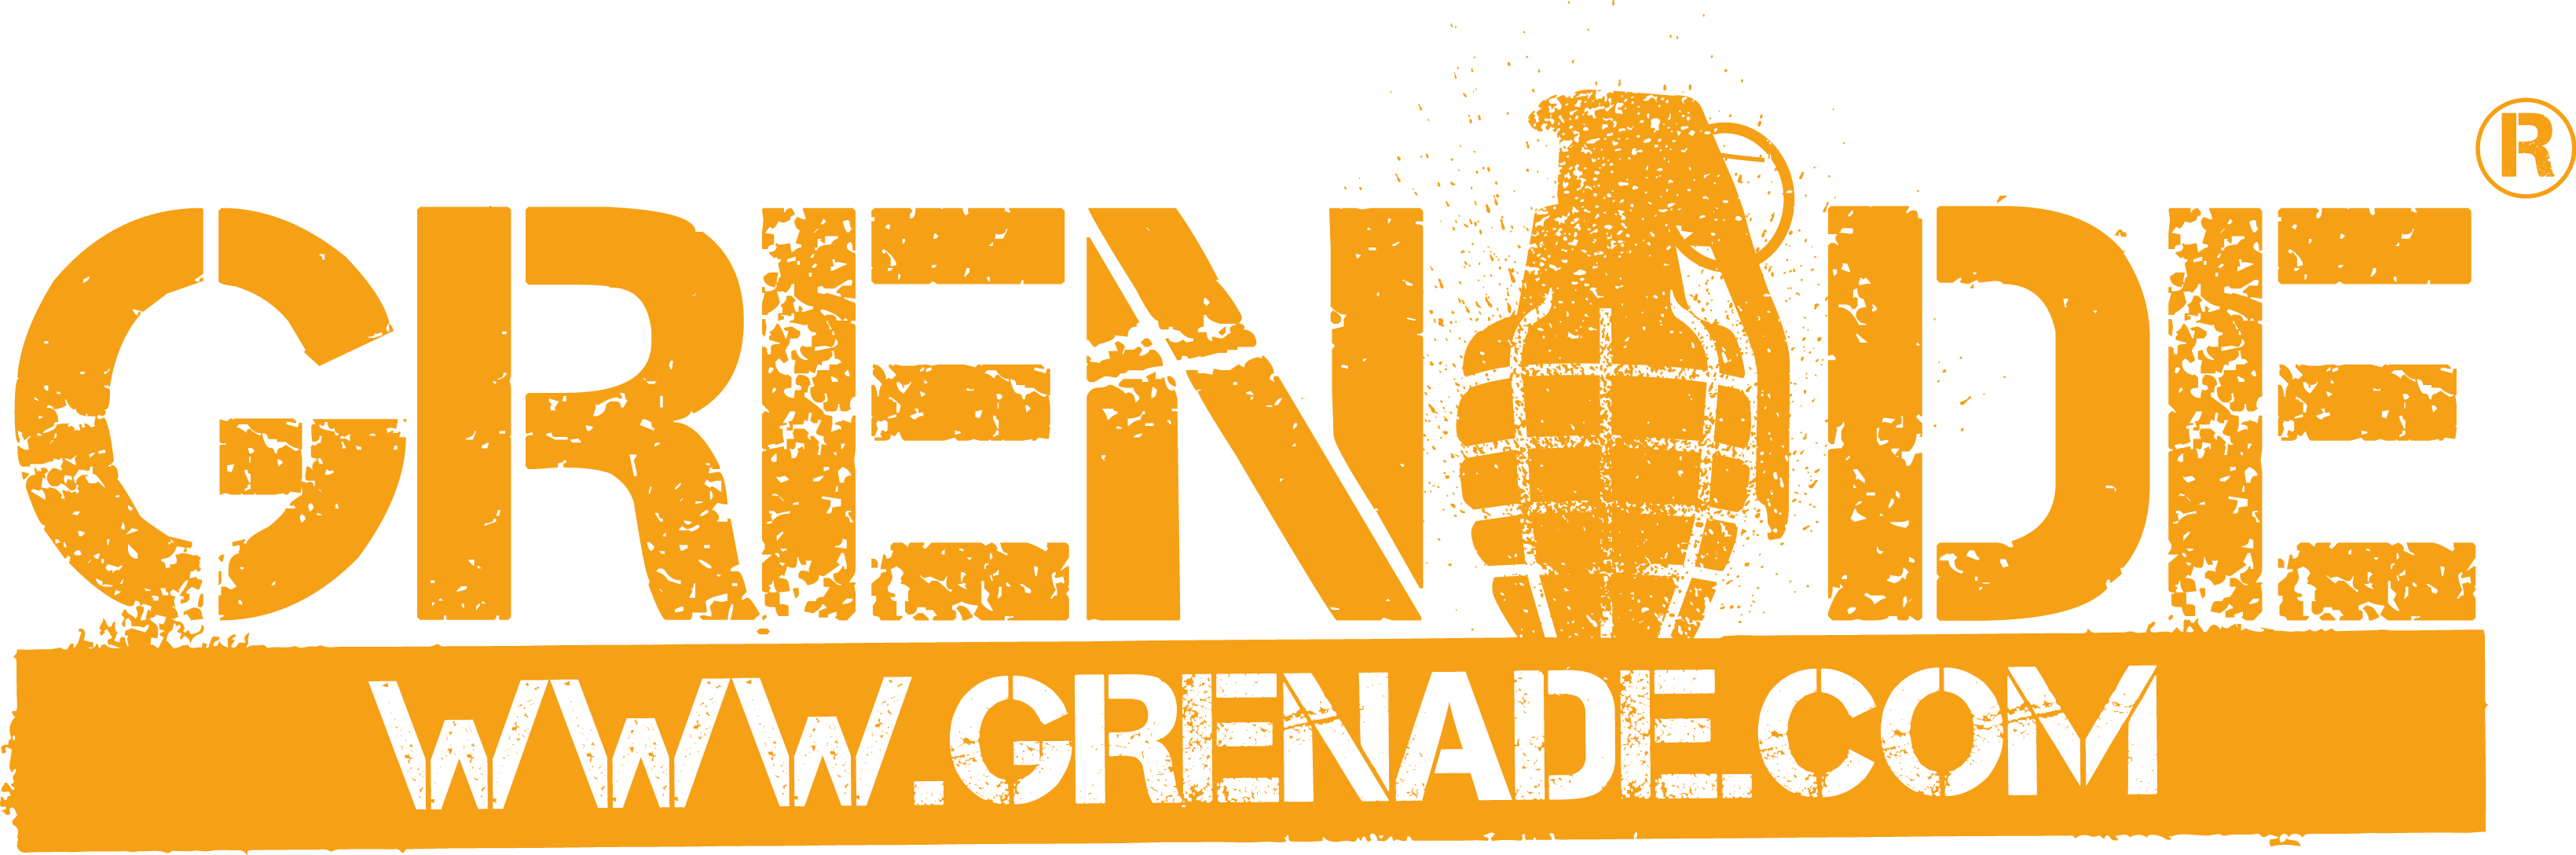 Grenade Logo - grenade-logo-png - The National Enterprise Challenge